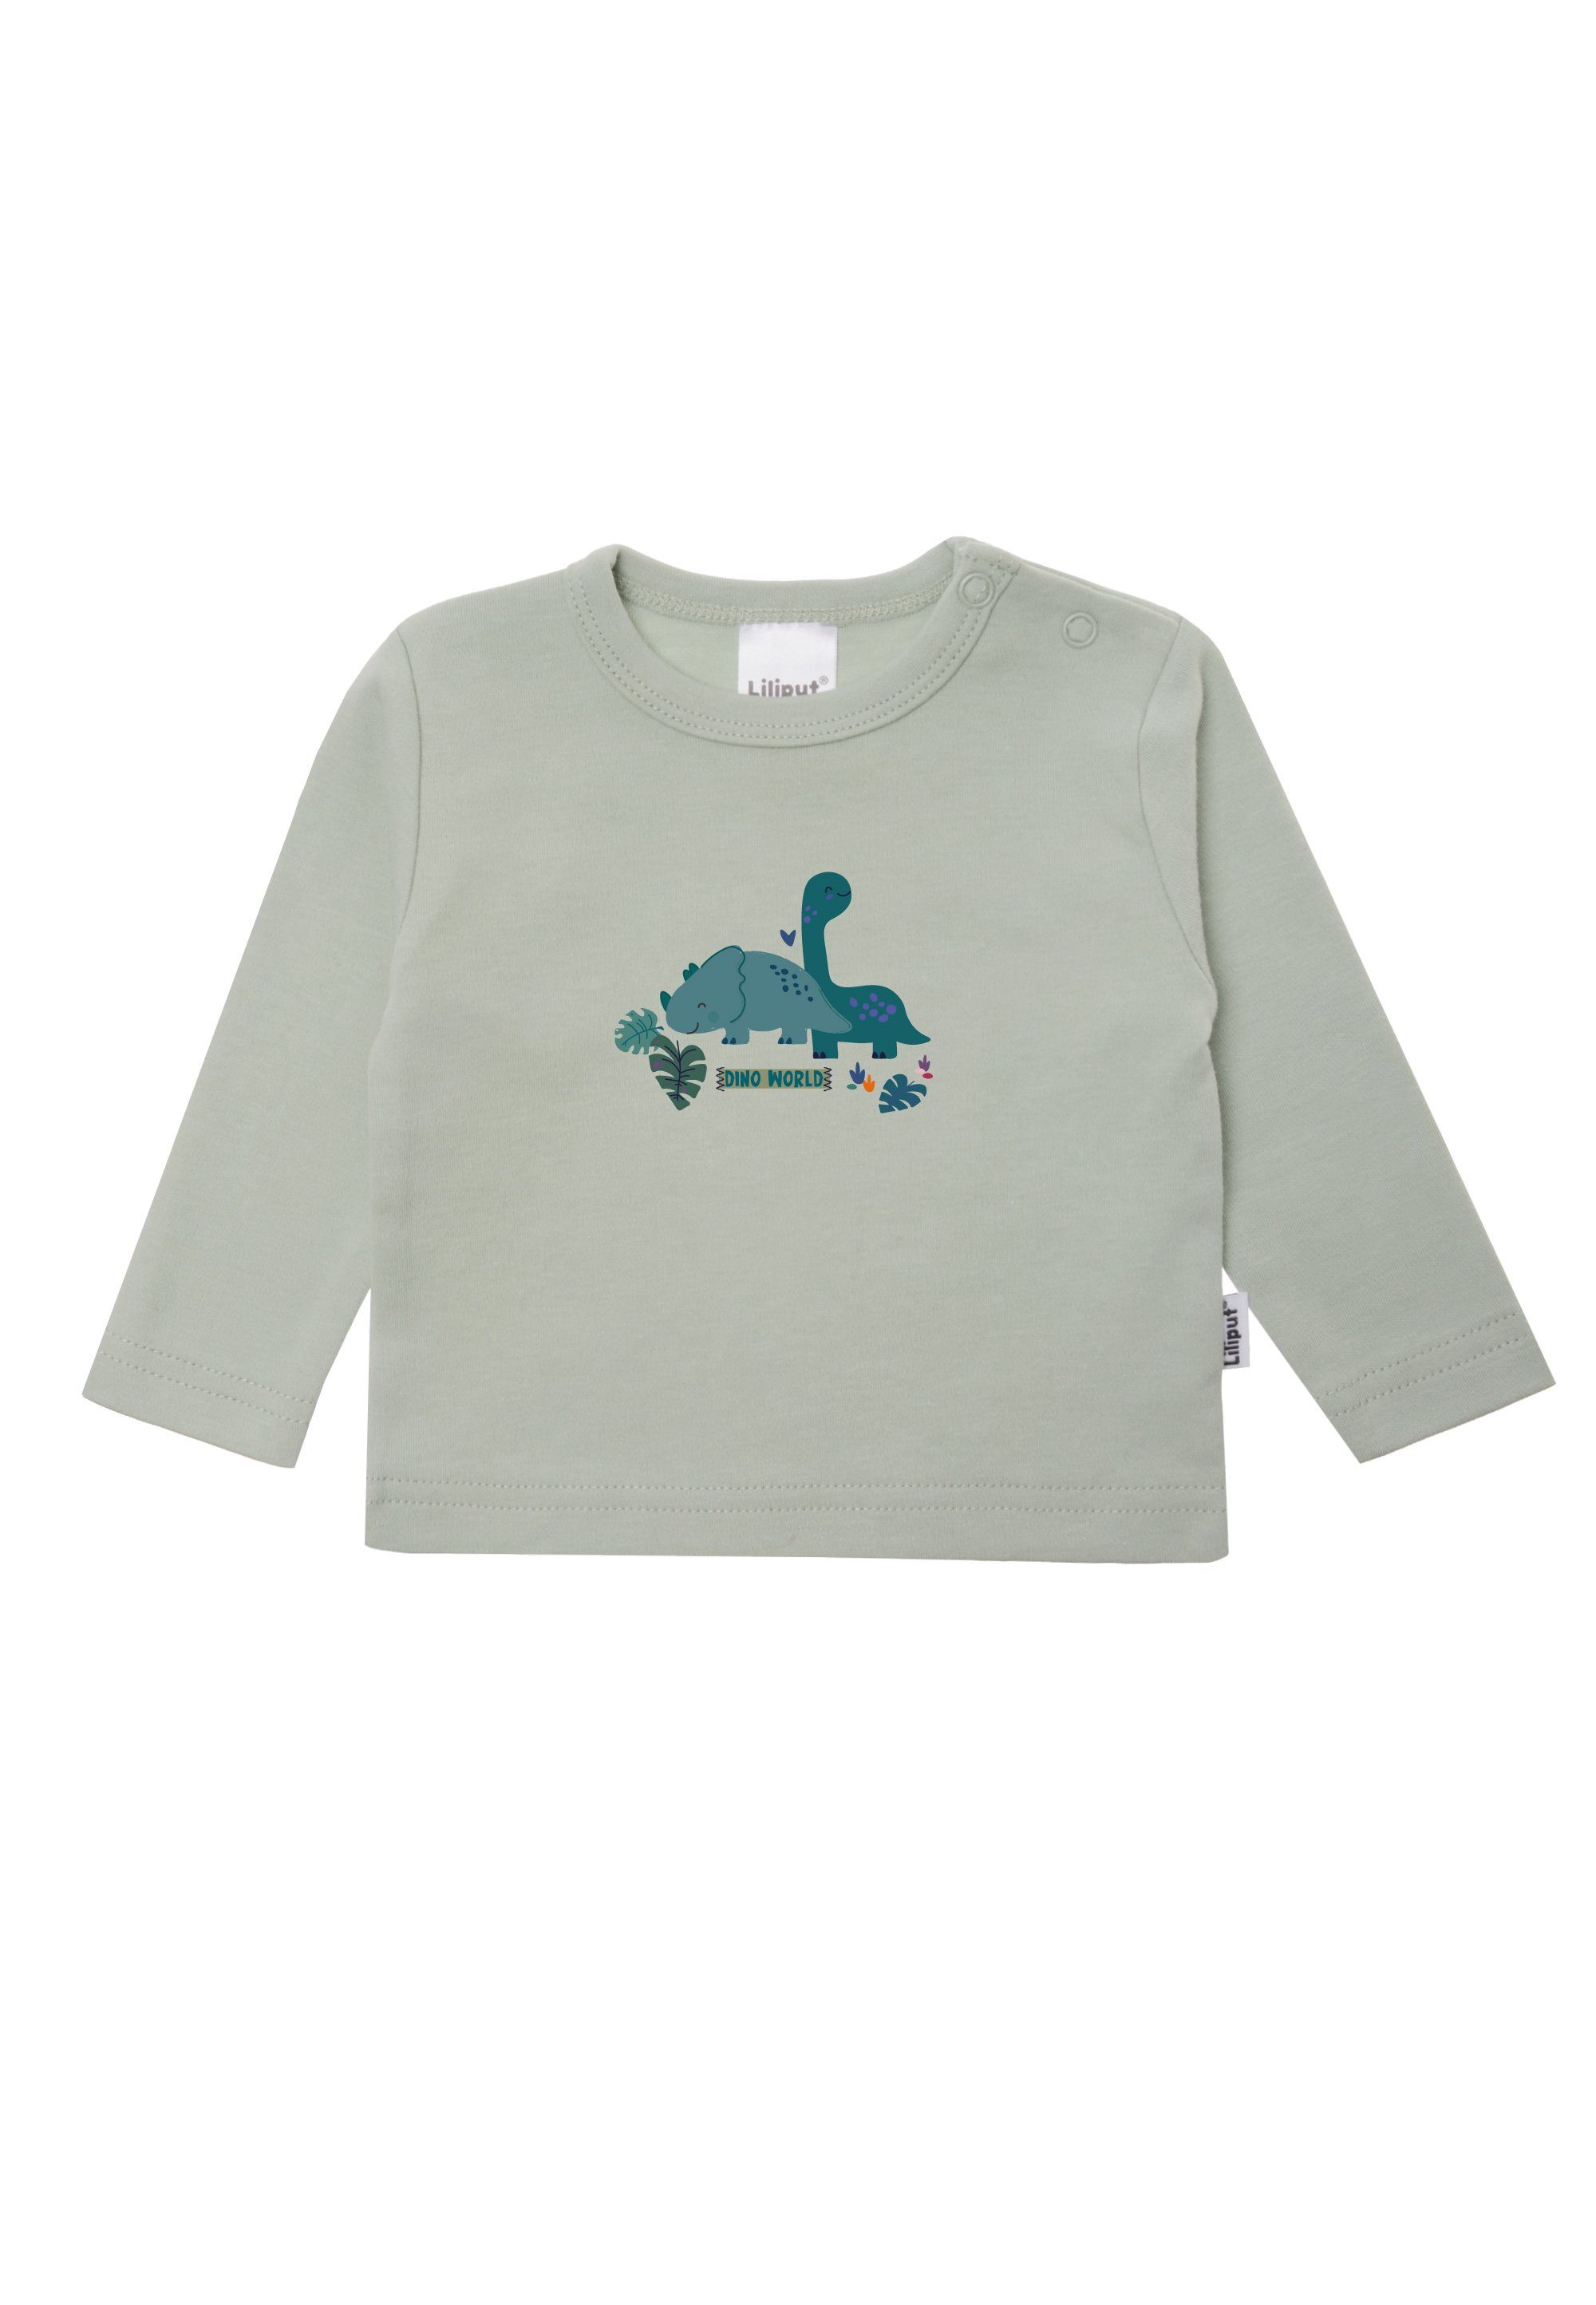 T-Shirt aus weichem Baumwoll-Material Dino Liliput